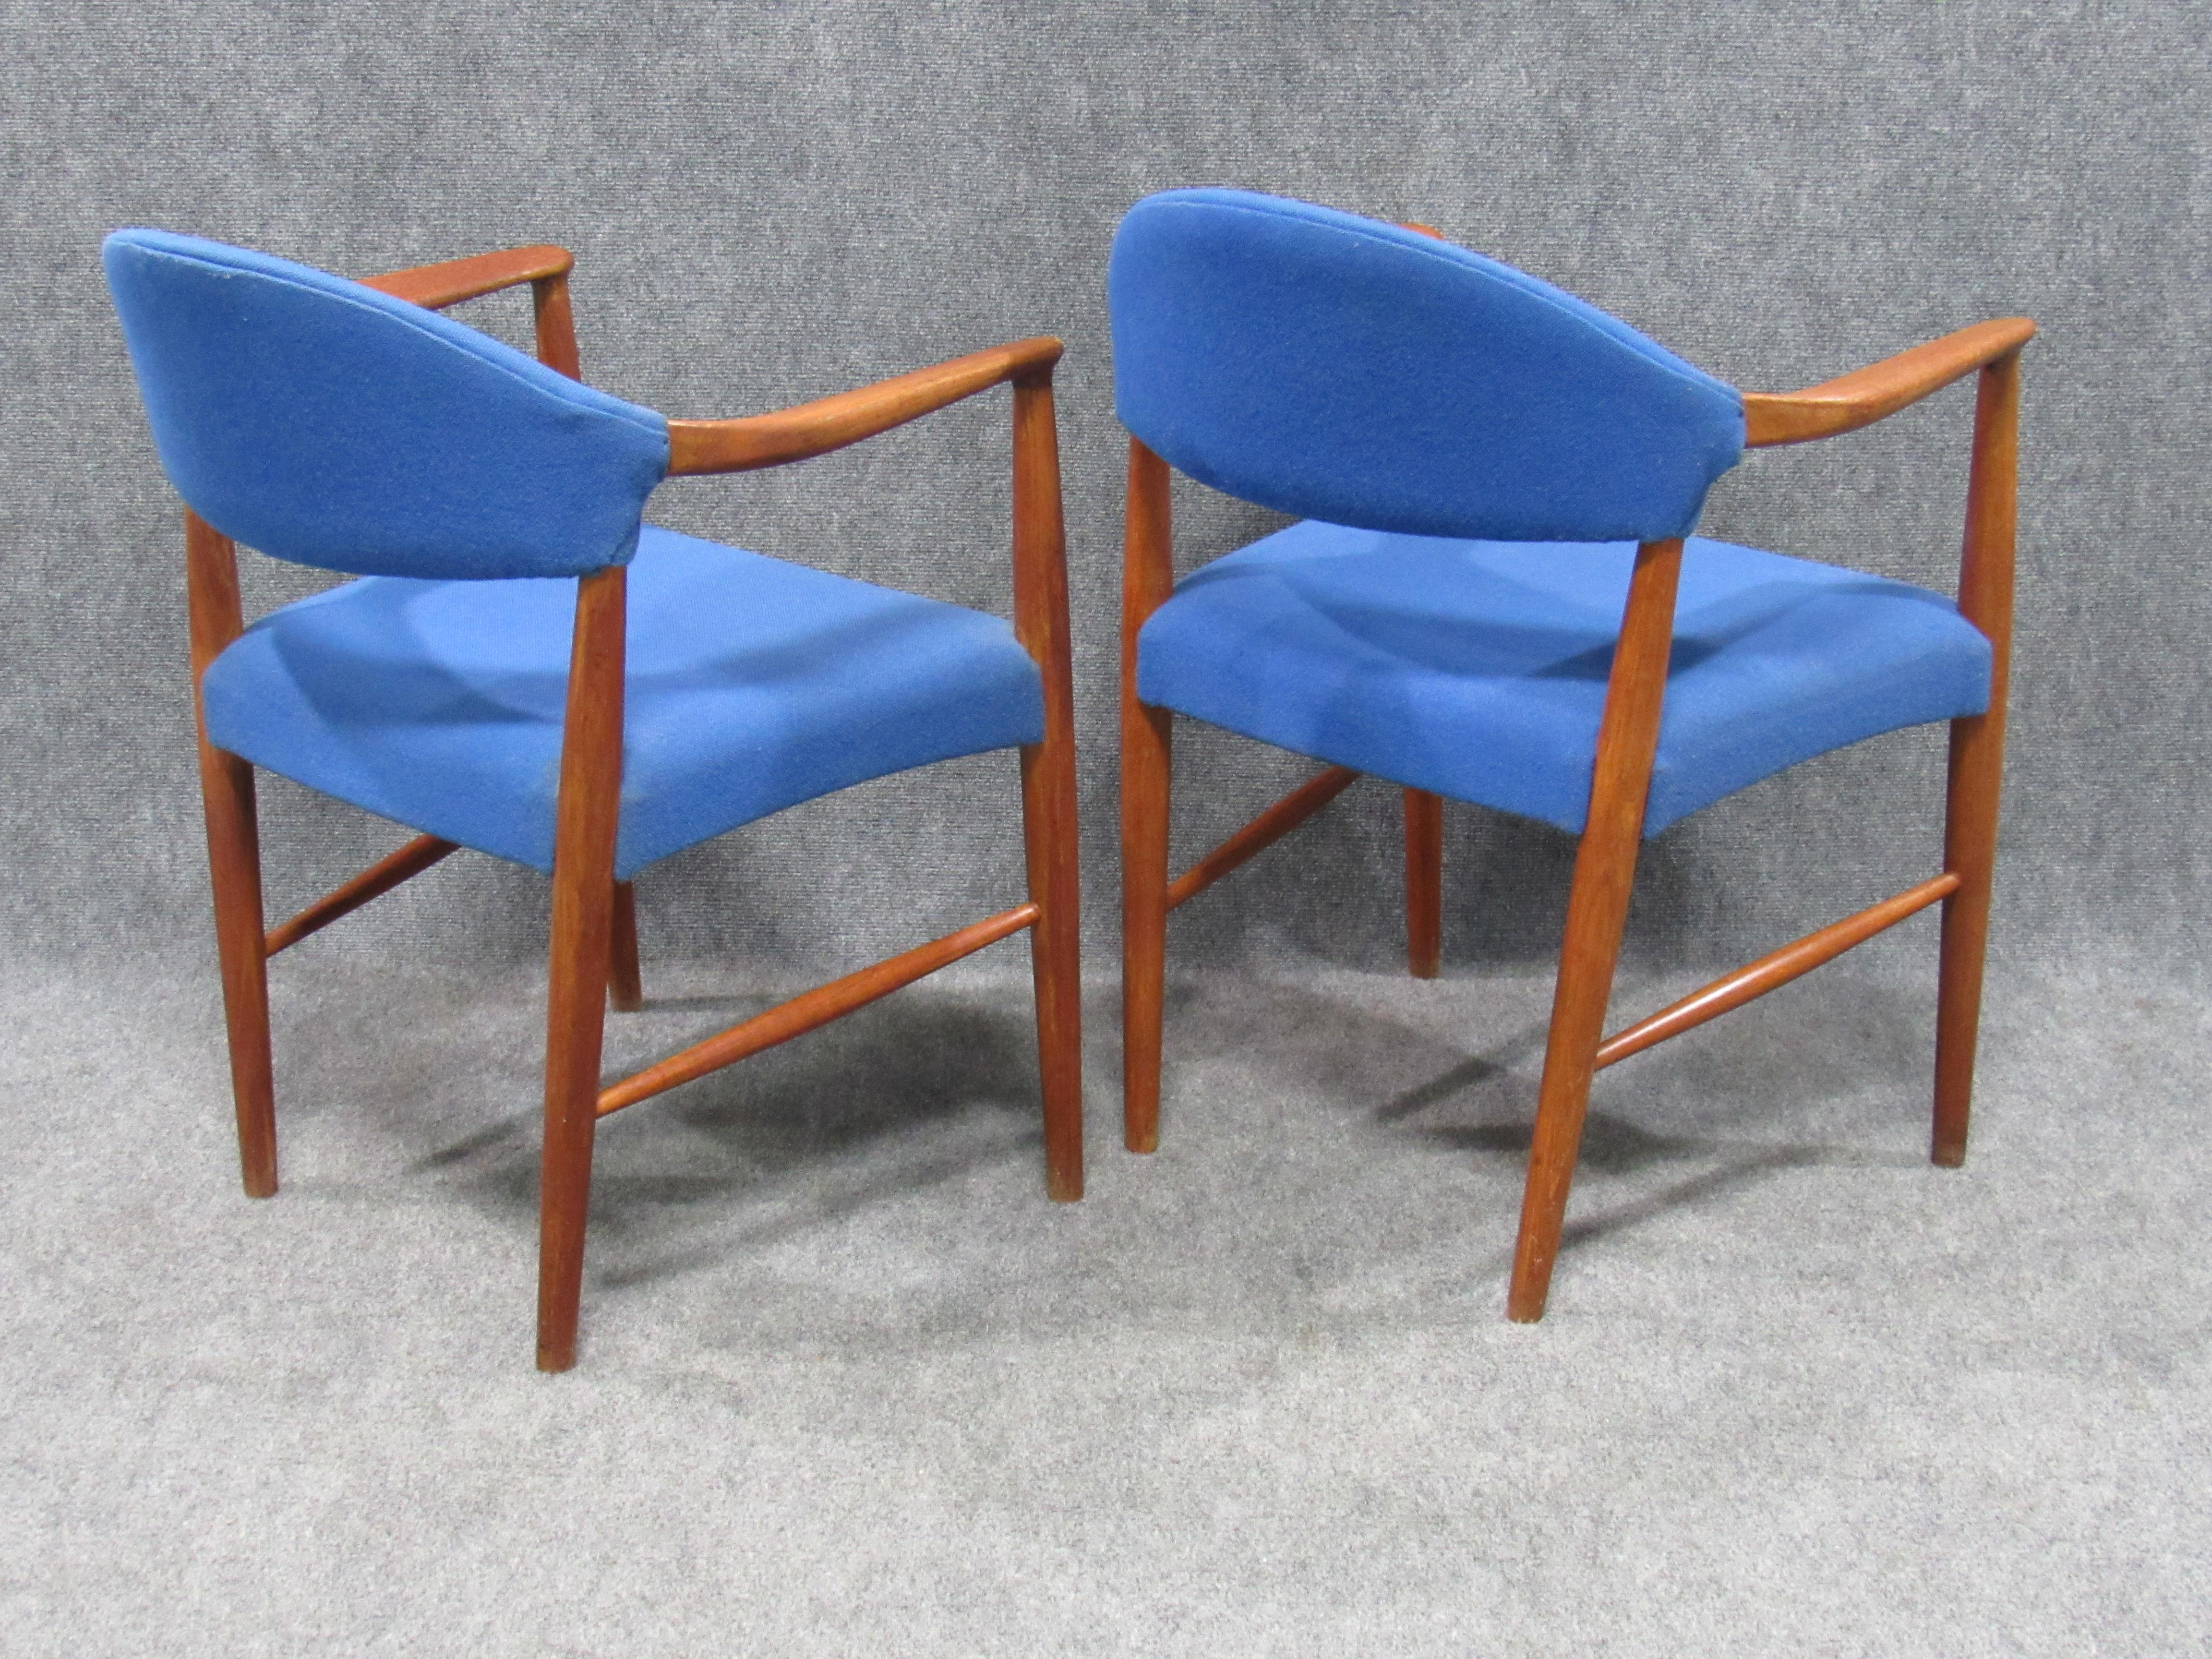 Achetée au Danemark, cette paire de fauteuils de salon danois en teck et laine bleue est attribuée à l'un des plus grands designers de chaises du milieu du siècle - Hans Wegner. Les courbes douces du dossier et la verticalité du cadre sont des